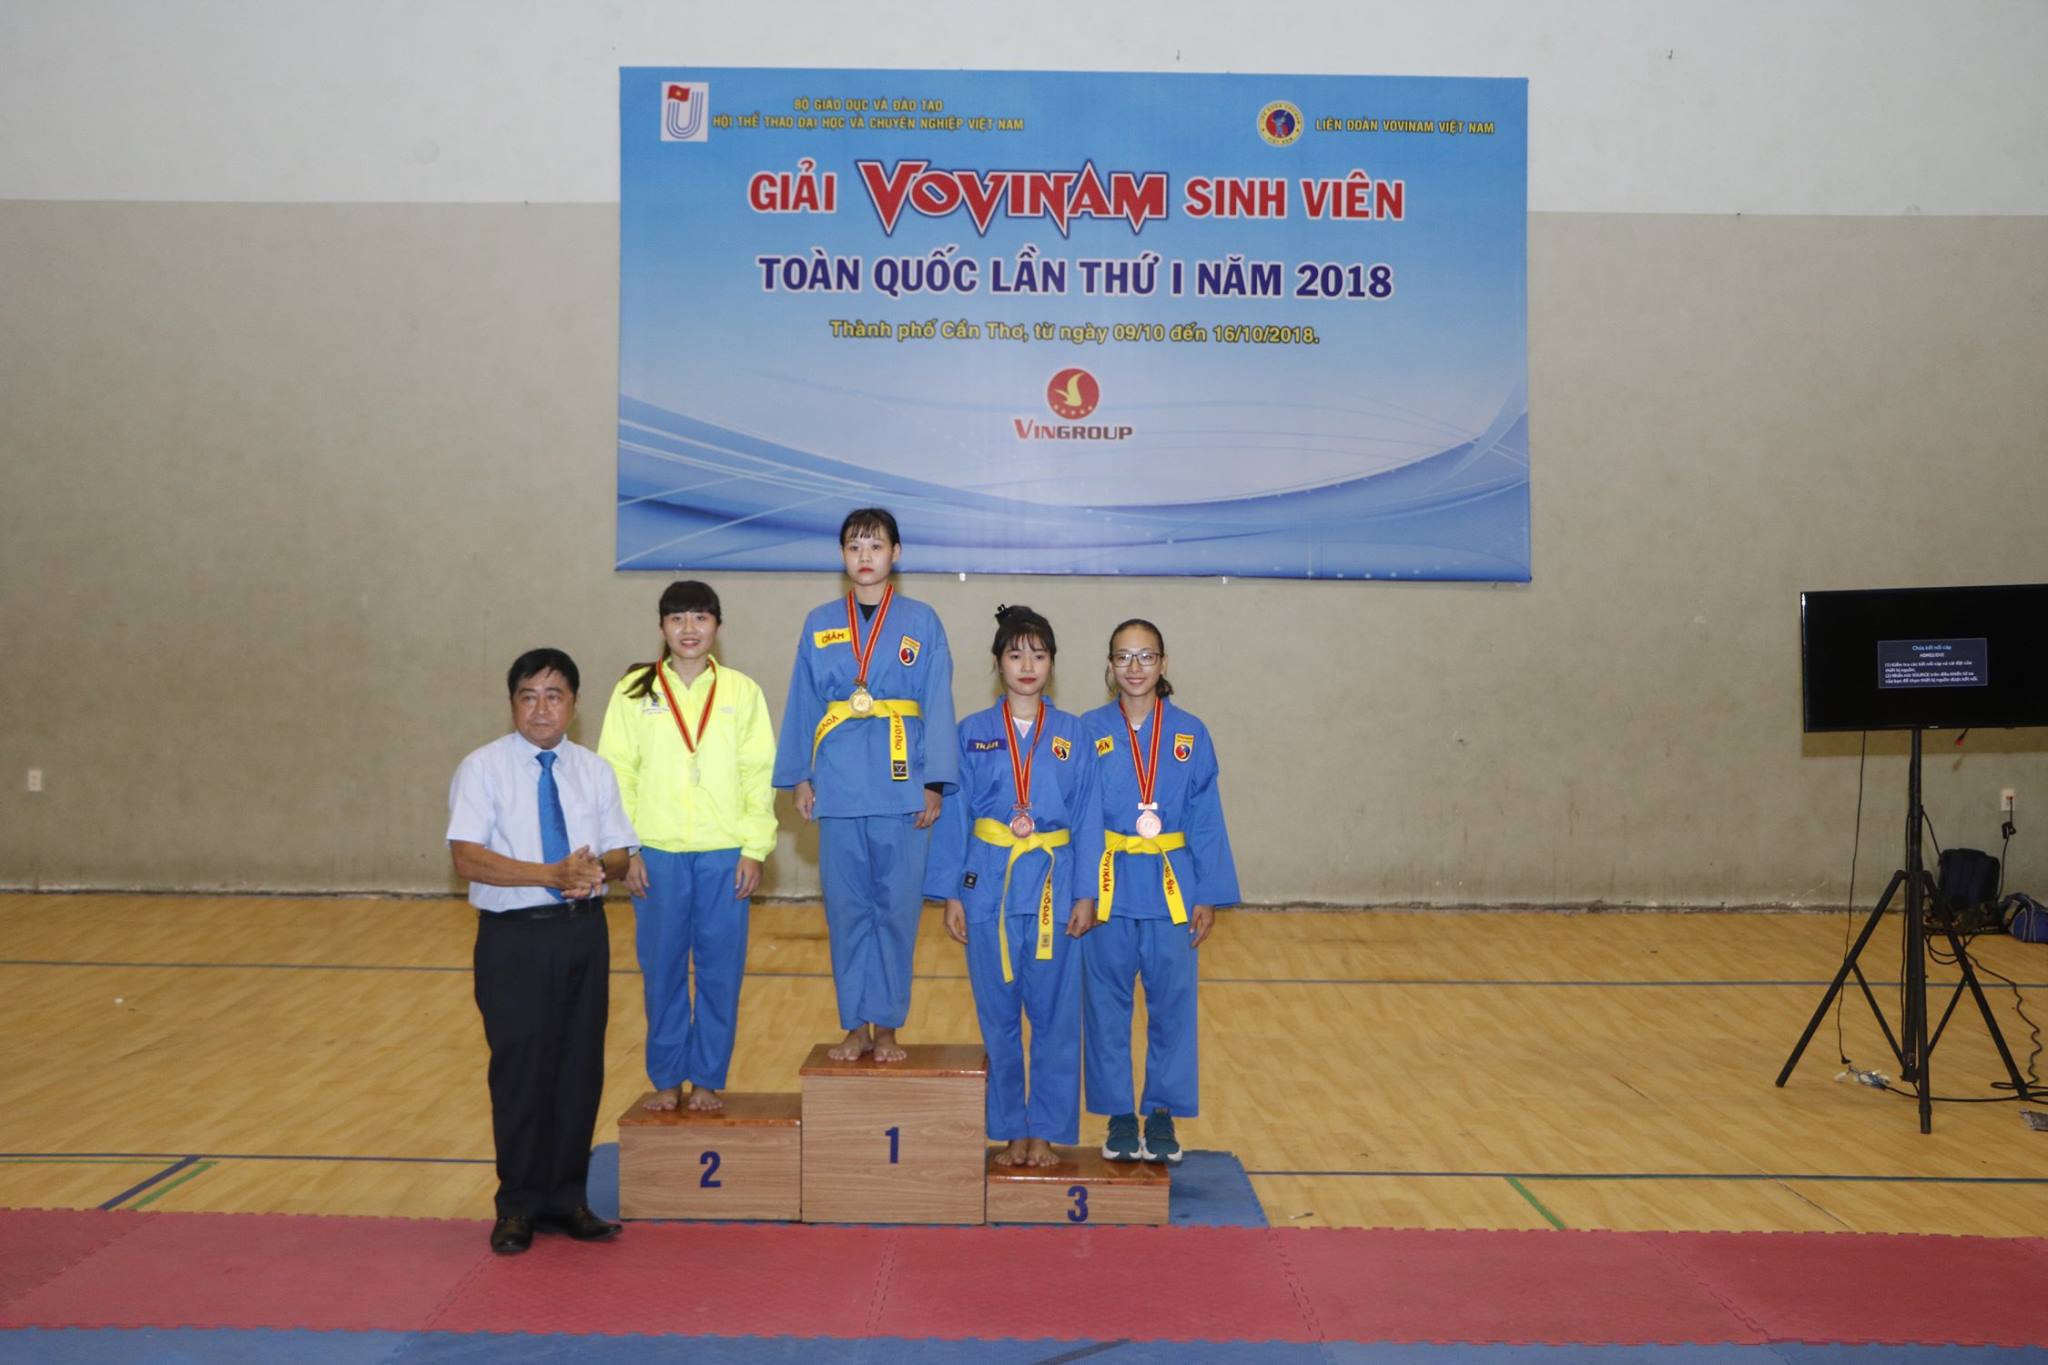 Sinh viên Trường ĐH KHTN giành 02 huy chương tại Vovinam Sinh viên Toàn quốc lần 1-2018